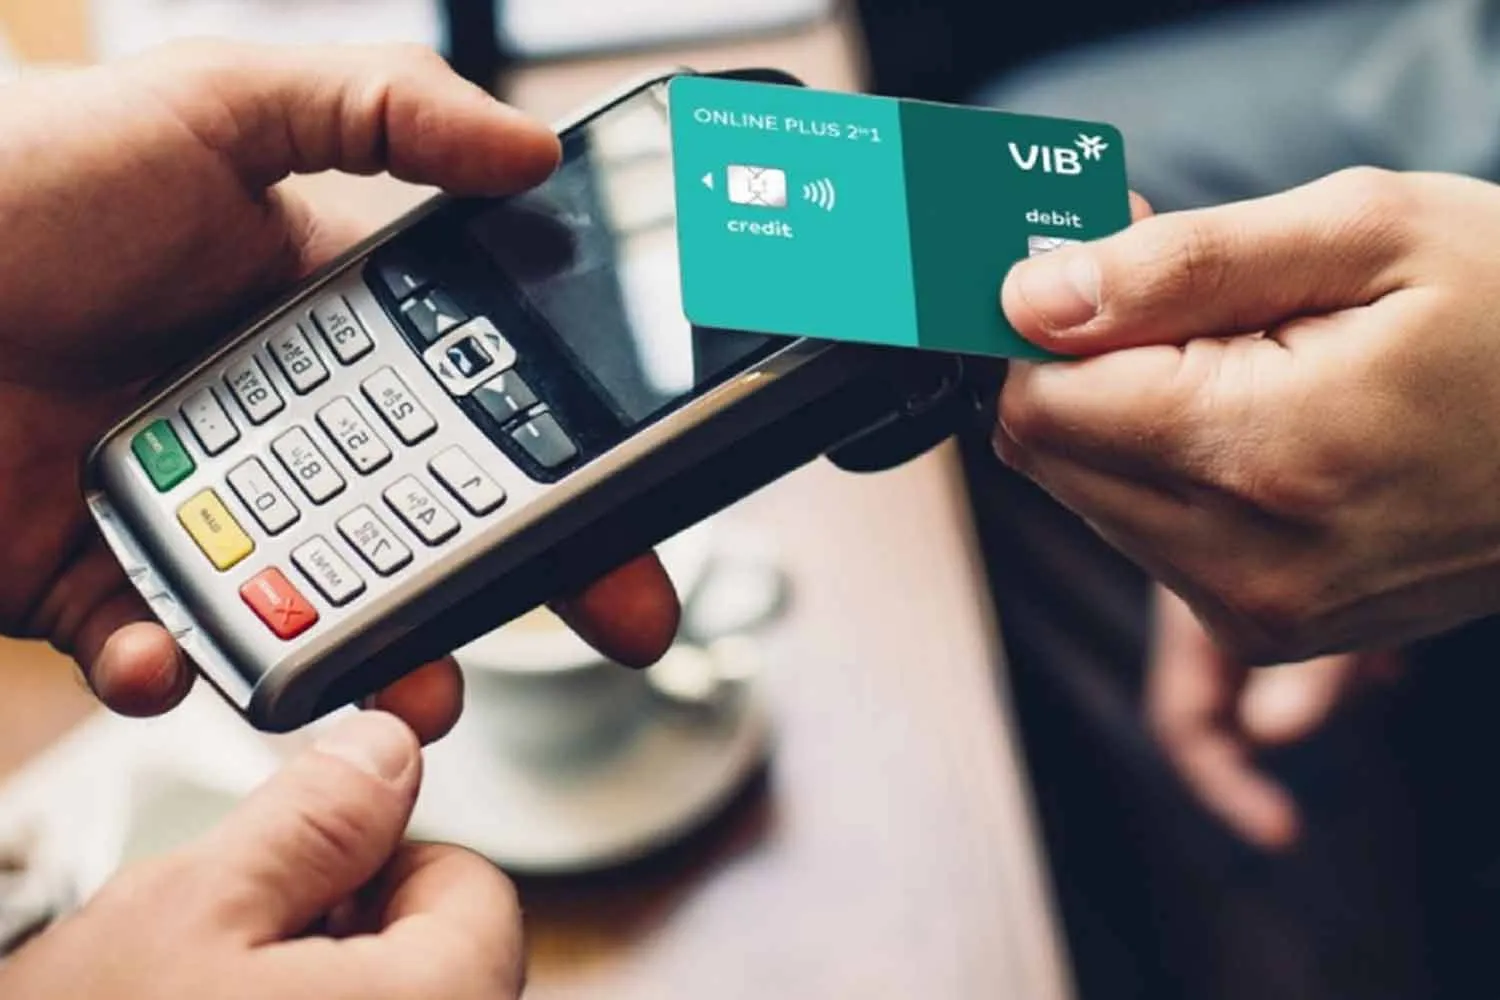 Đáo hạn là dịch vụ nằm trong chuỗi dịch vụ rút tiền mặt từ thẻ tín dụng